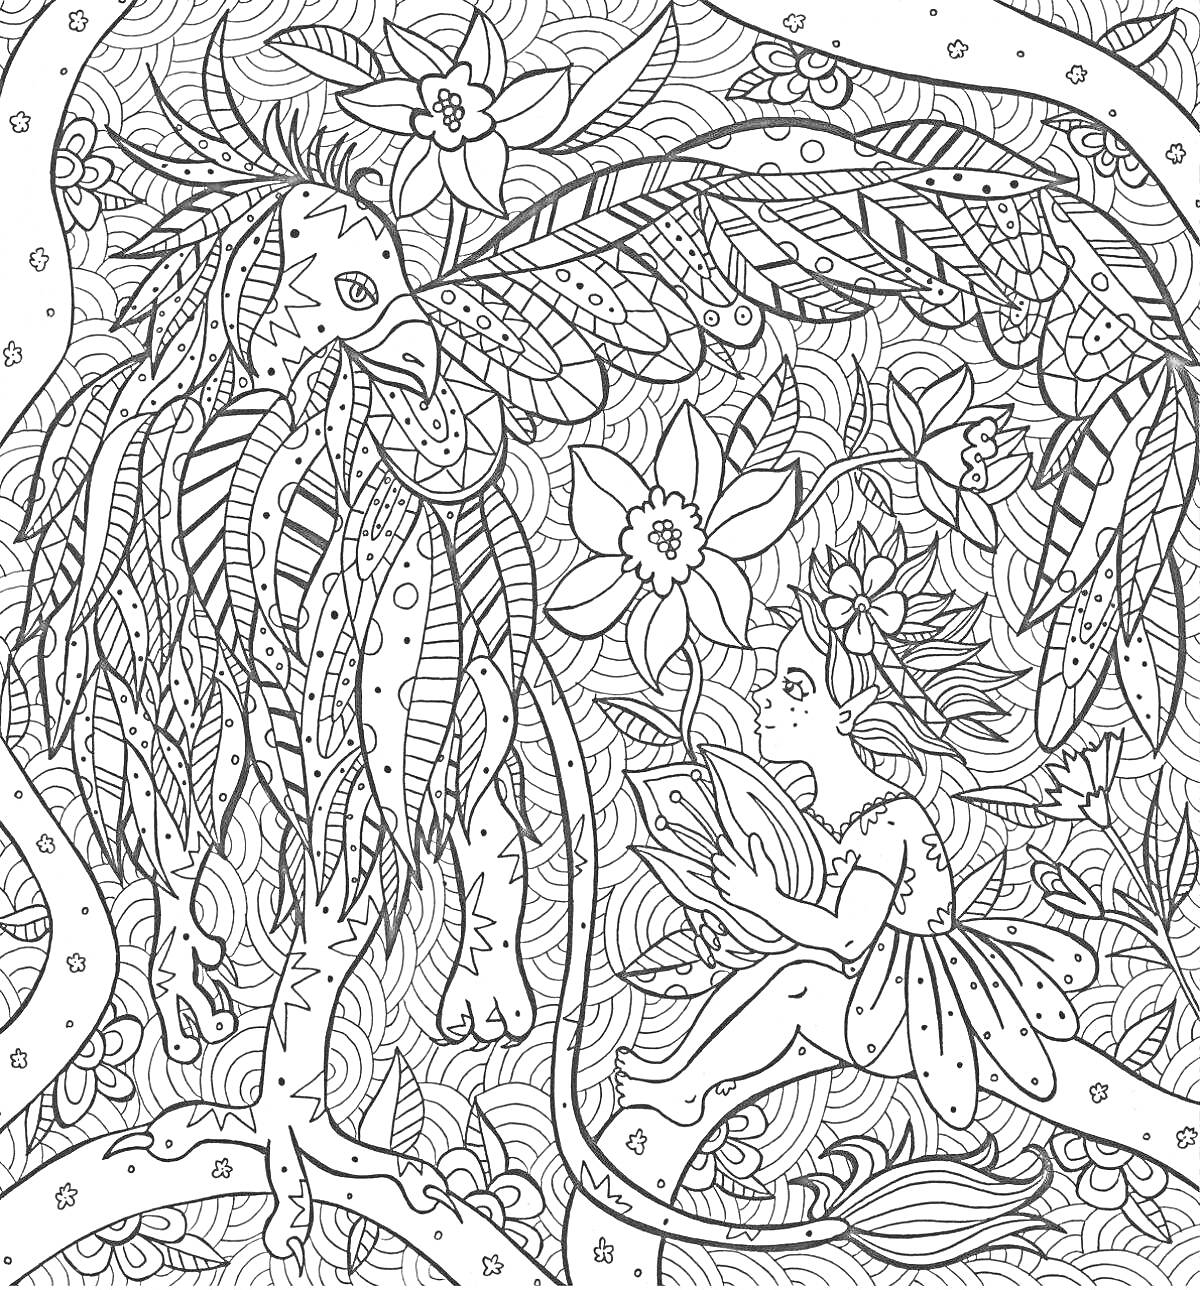 Раскраска Волшебный лес с феей и загадочным существом среди цветущих растений